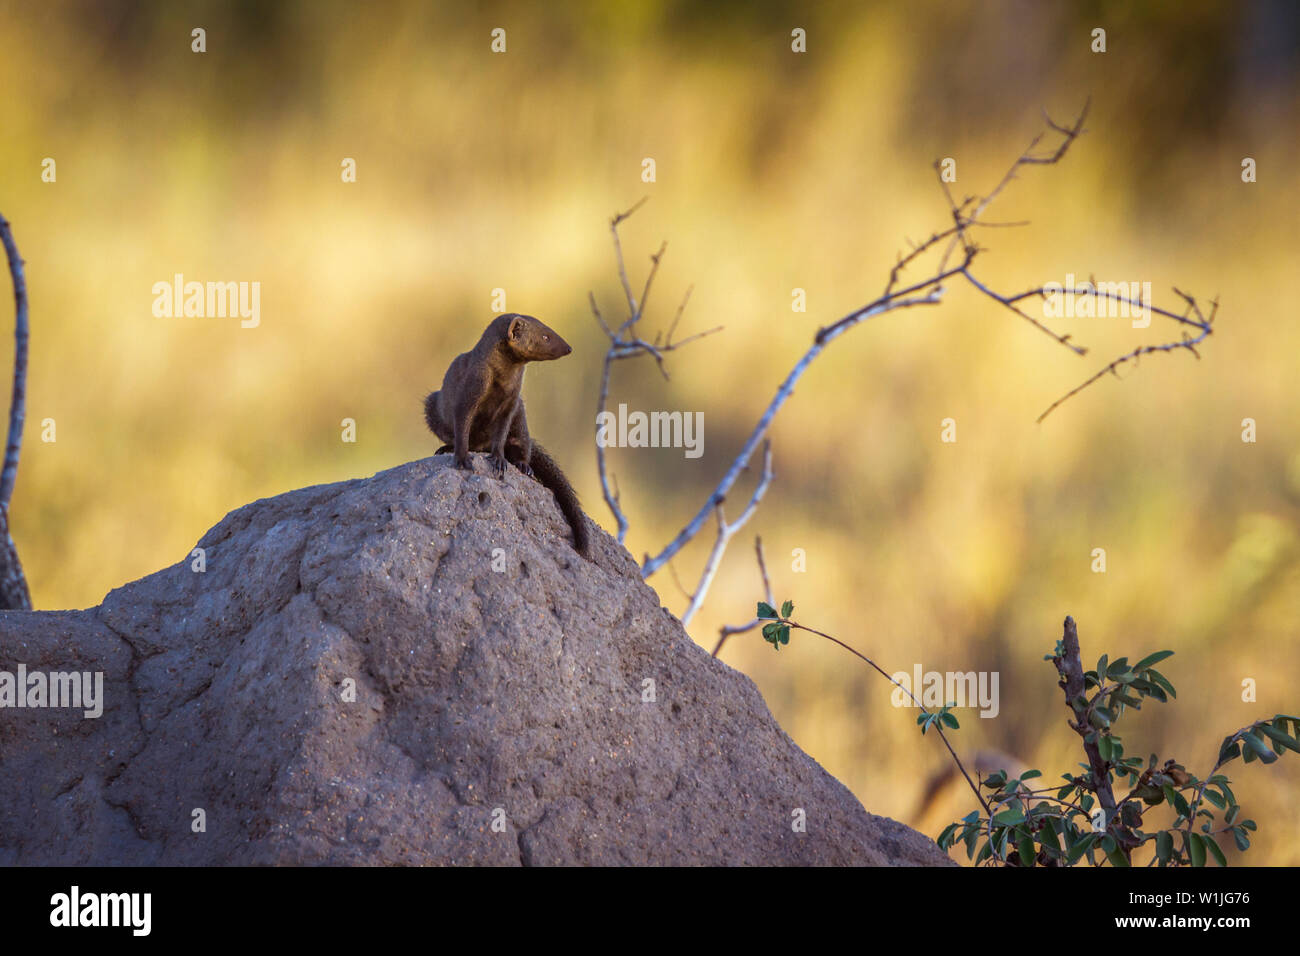 Comune la mangusta nana sul tumulo termite nel Parco Nazionale di Kruger, Sud Africa ; Specie Helogale parvula famiglia dei Herpestidae Foto Stock